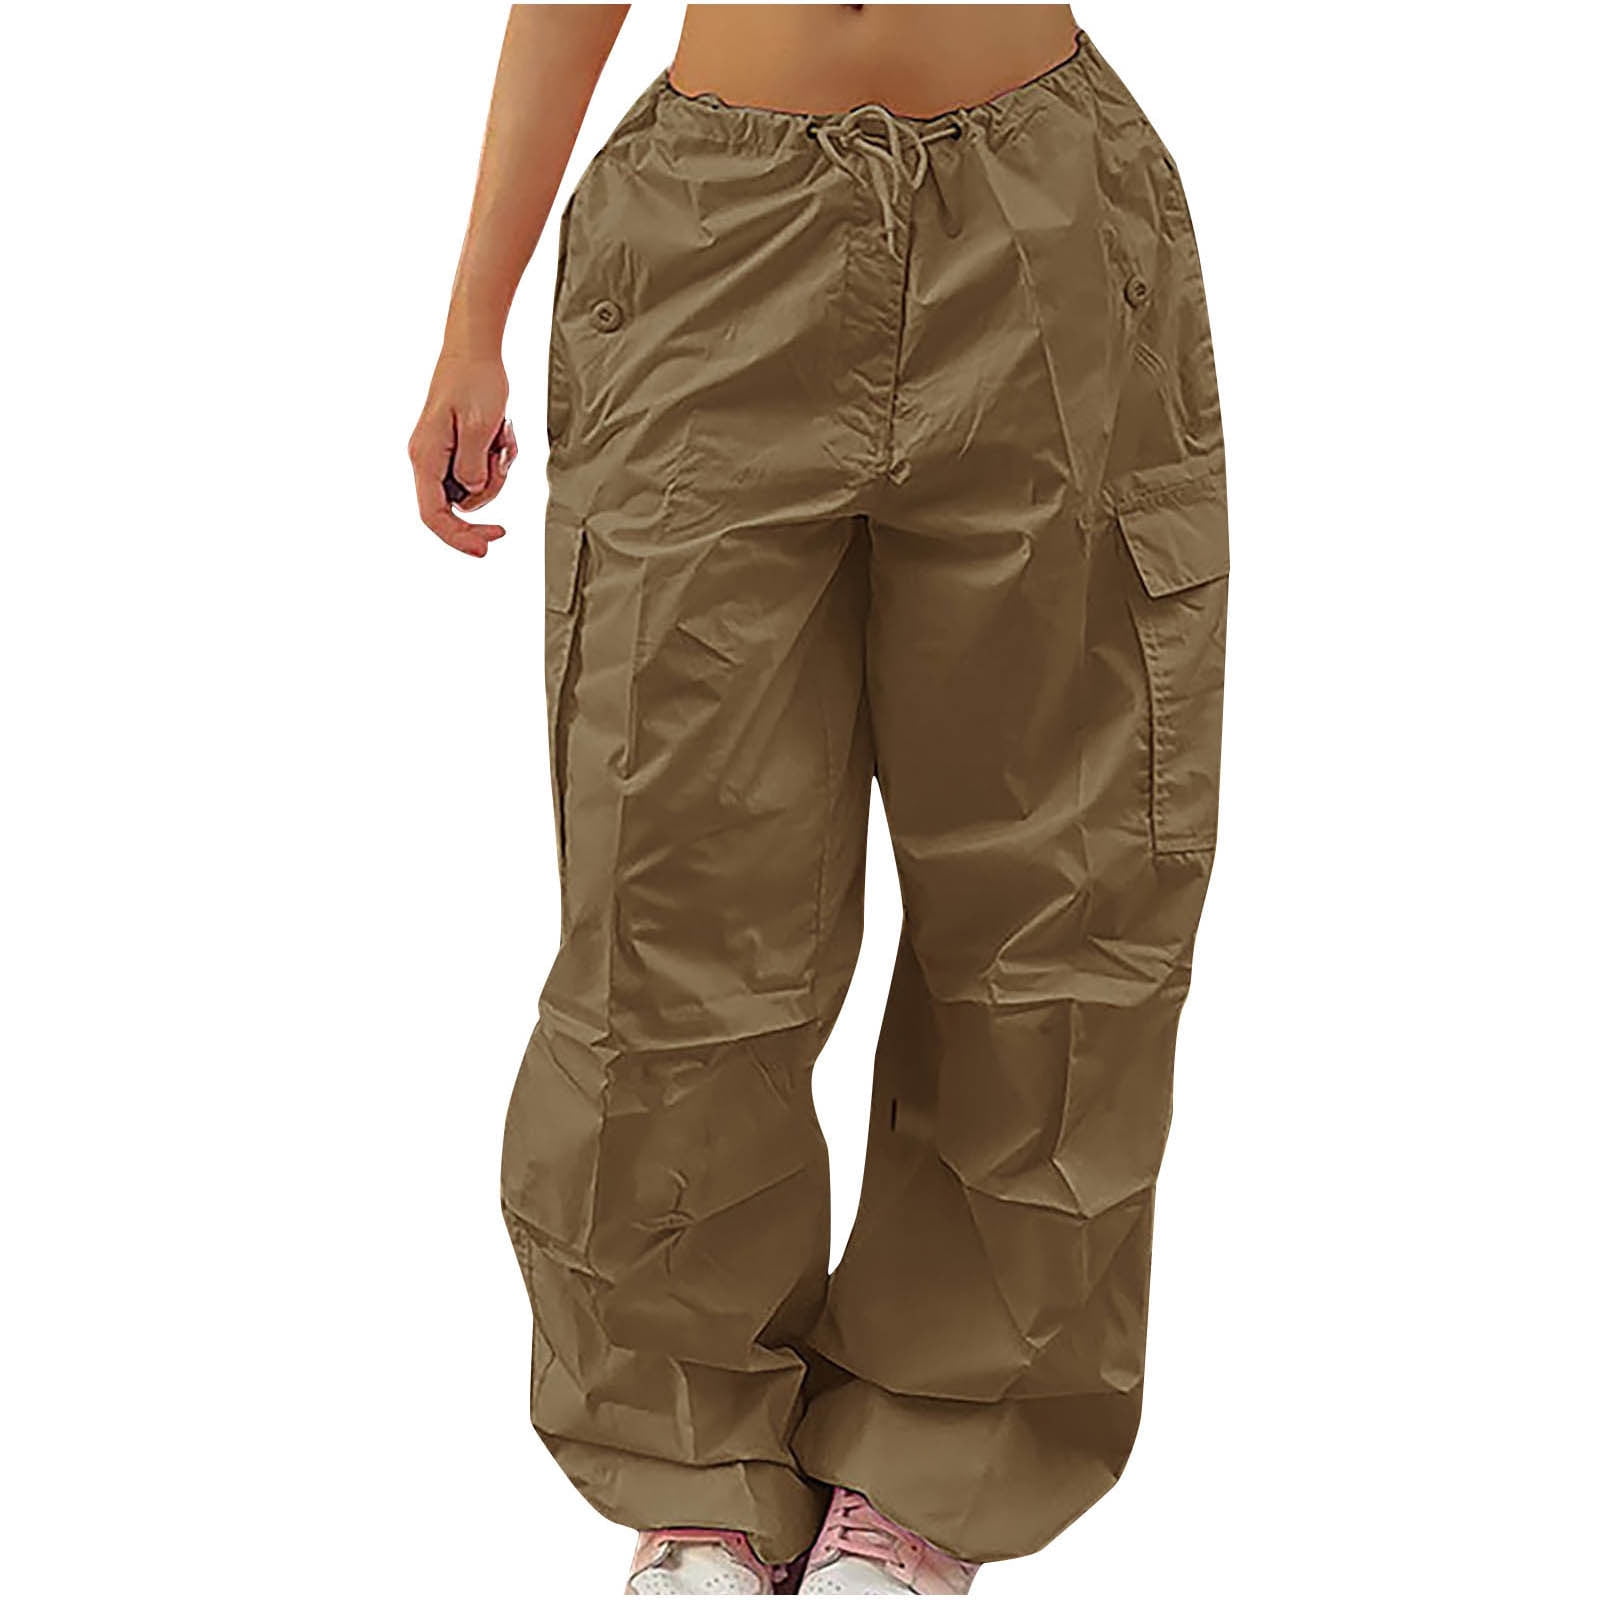 Arket Womens Wide Leg High Rise Linen Pants Size 14 EU 44 Light Beige –  Cove Consignment Boutique